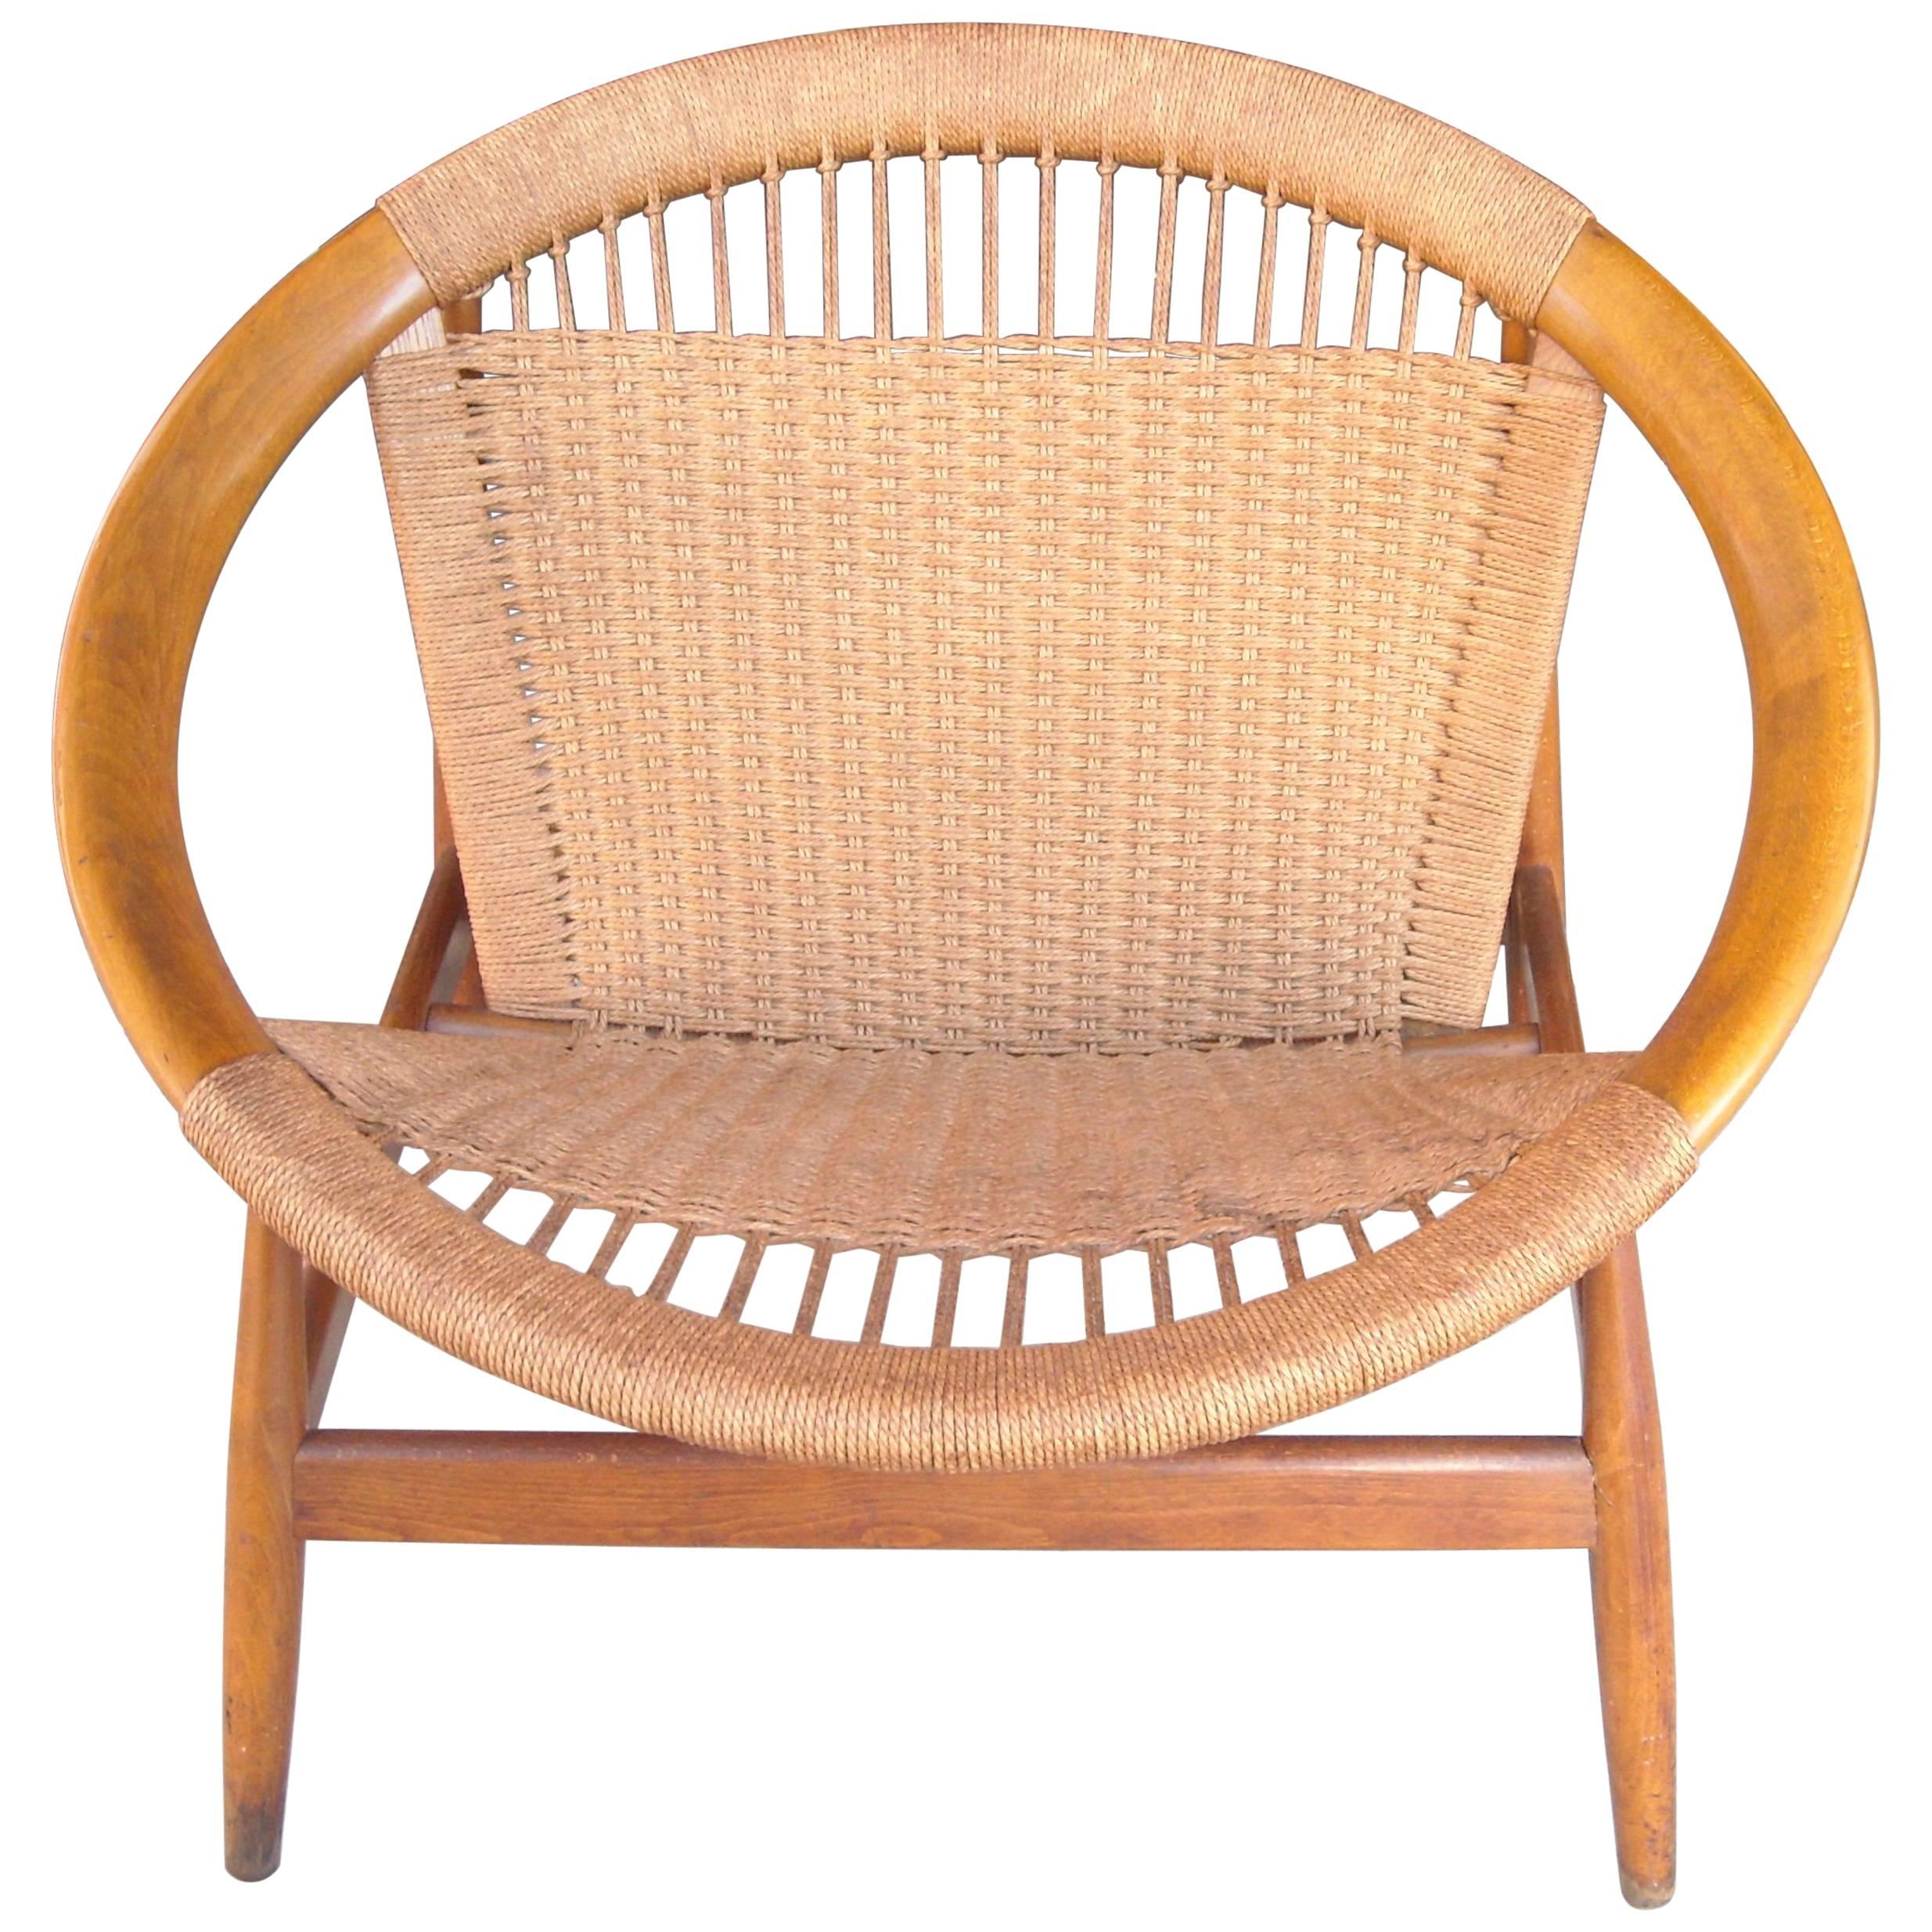 Illum Wikkelso "Ringstol" Ring Chair, Rope, Walnut